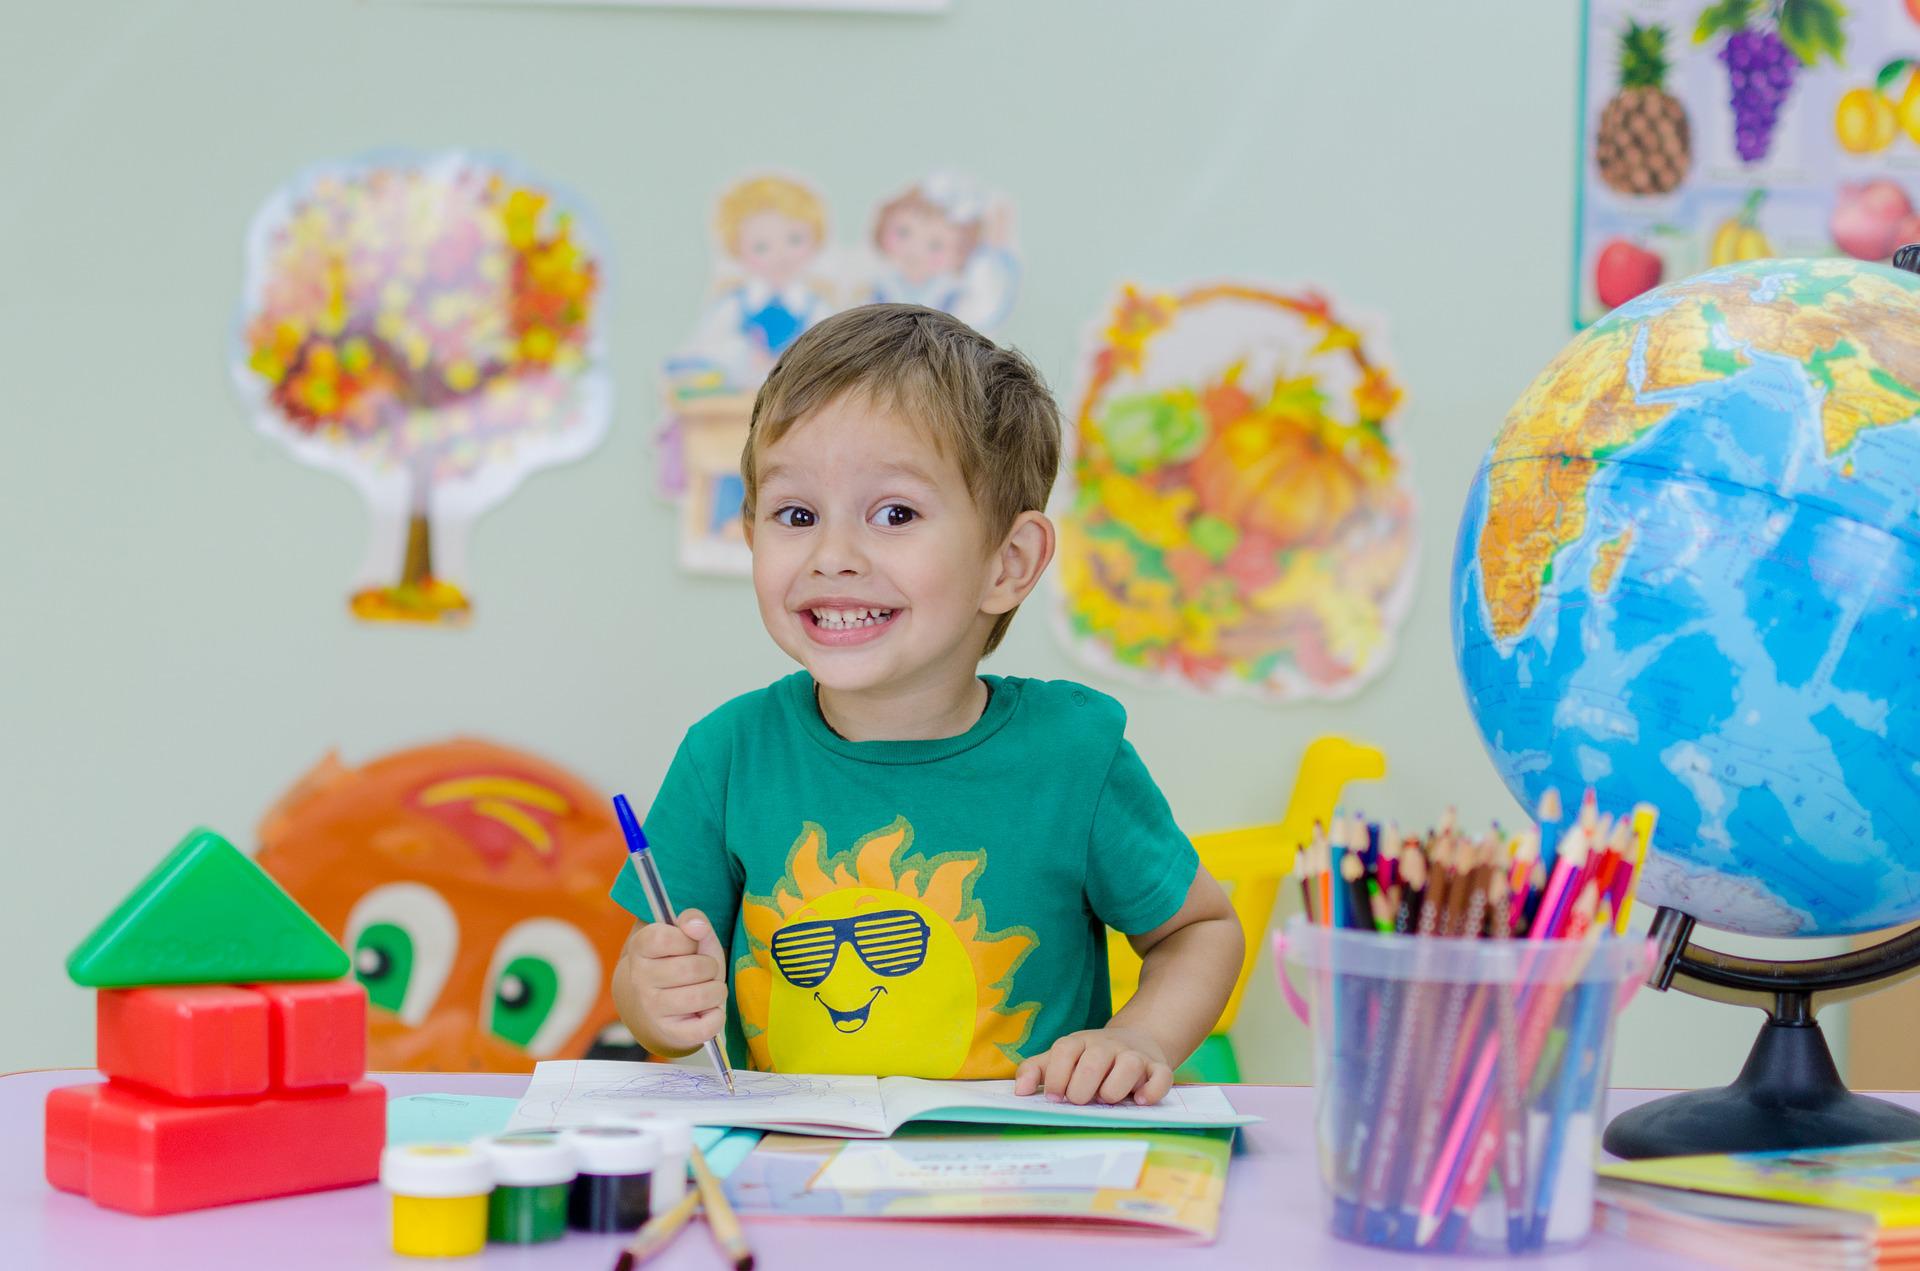 enfant qui fait des gribouillis sur un cahier avec un sourire espiègle